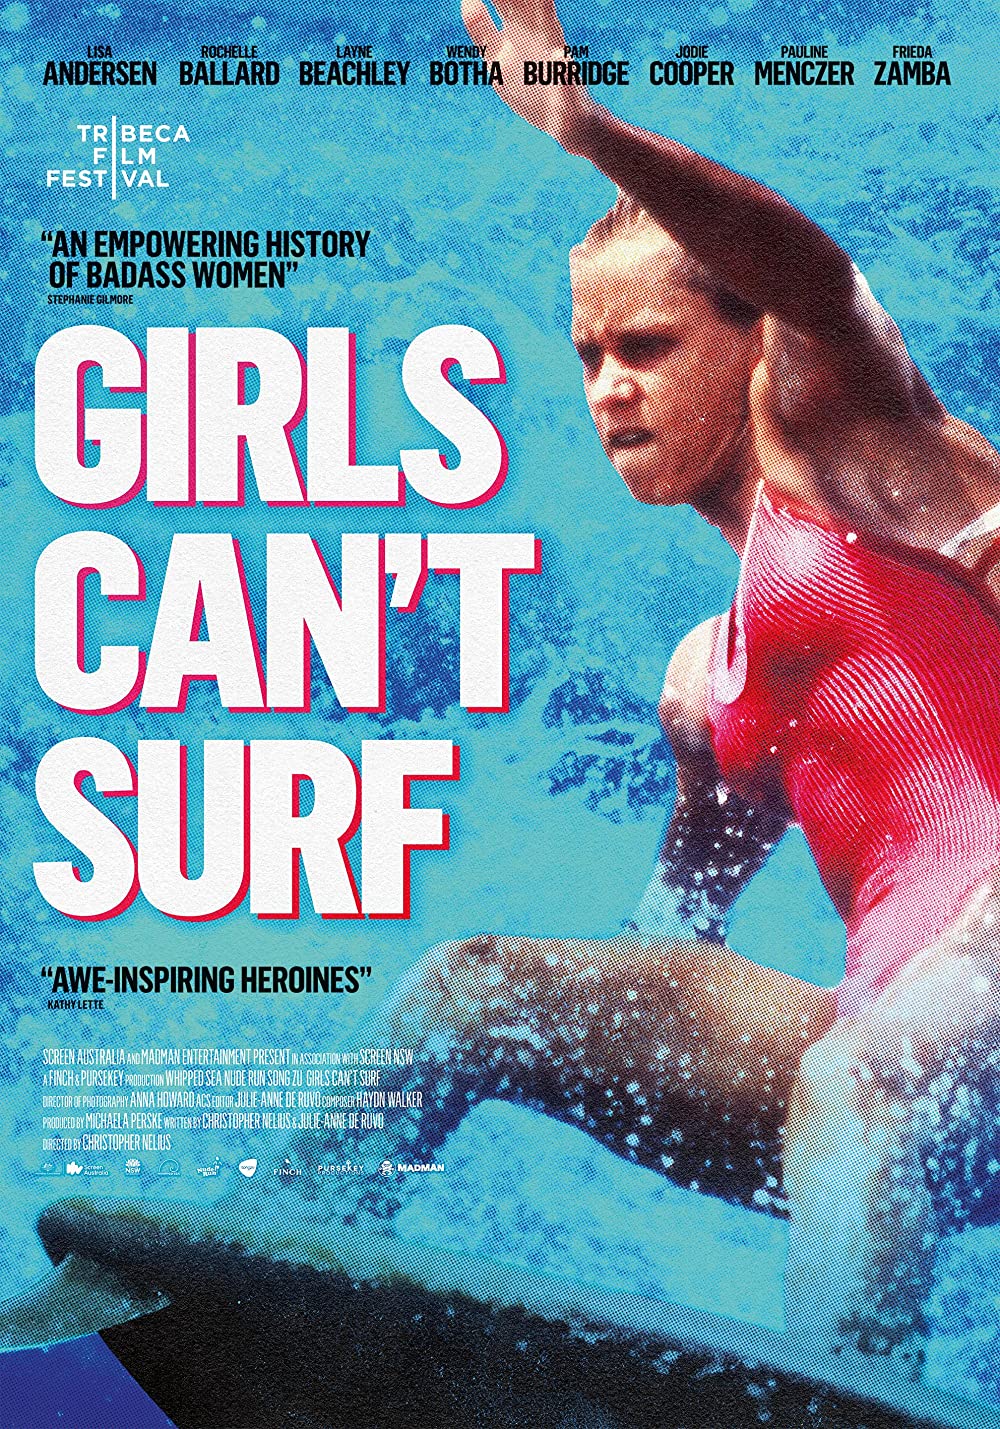 Filmbeschreibung zu Girls can't surf (OV)